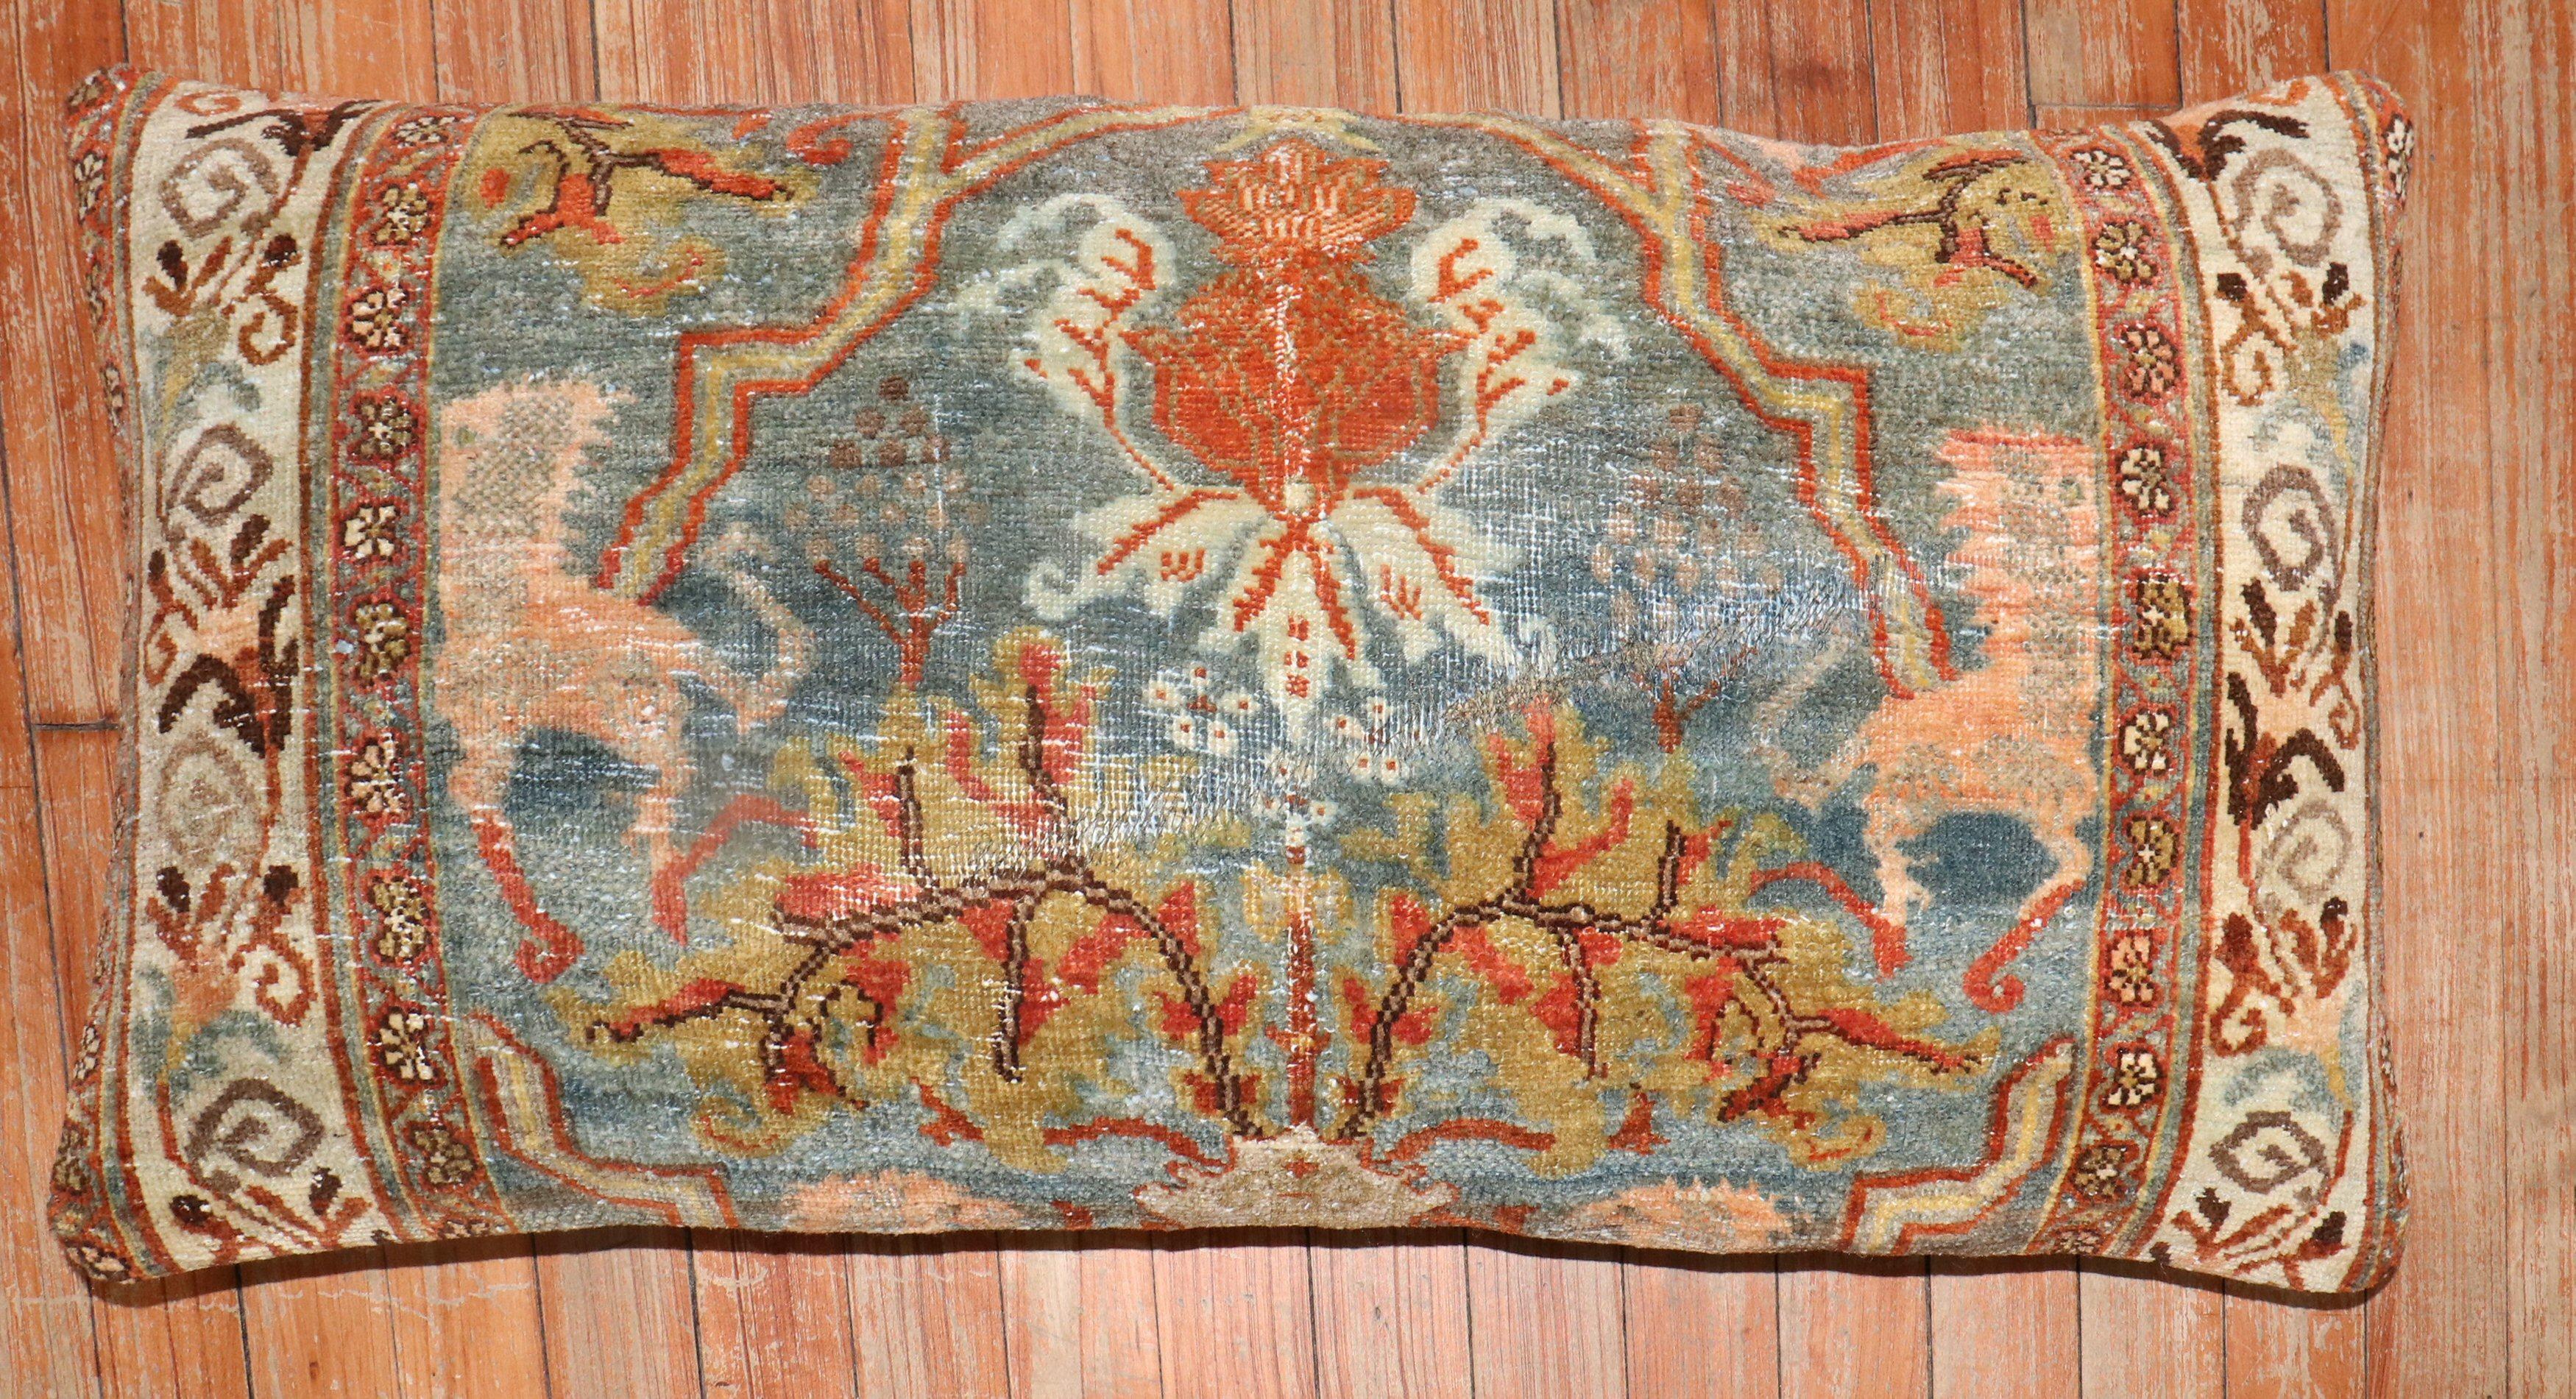 Kissen aus einem persischen Bidjar-Teppich aus dem späten 19. Jahrhundert mit einem malerischen Muster. 

Maße: 16'' x 32''.